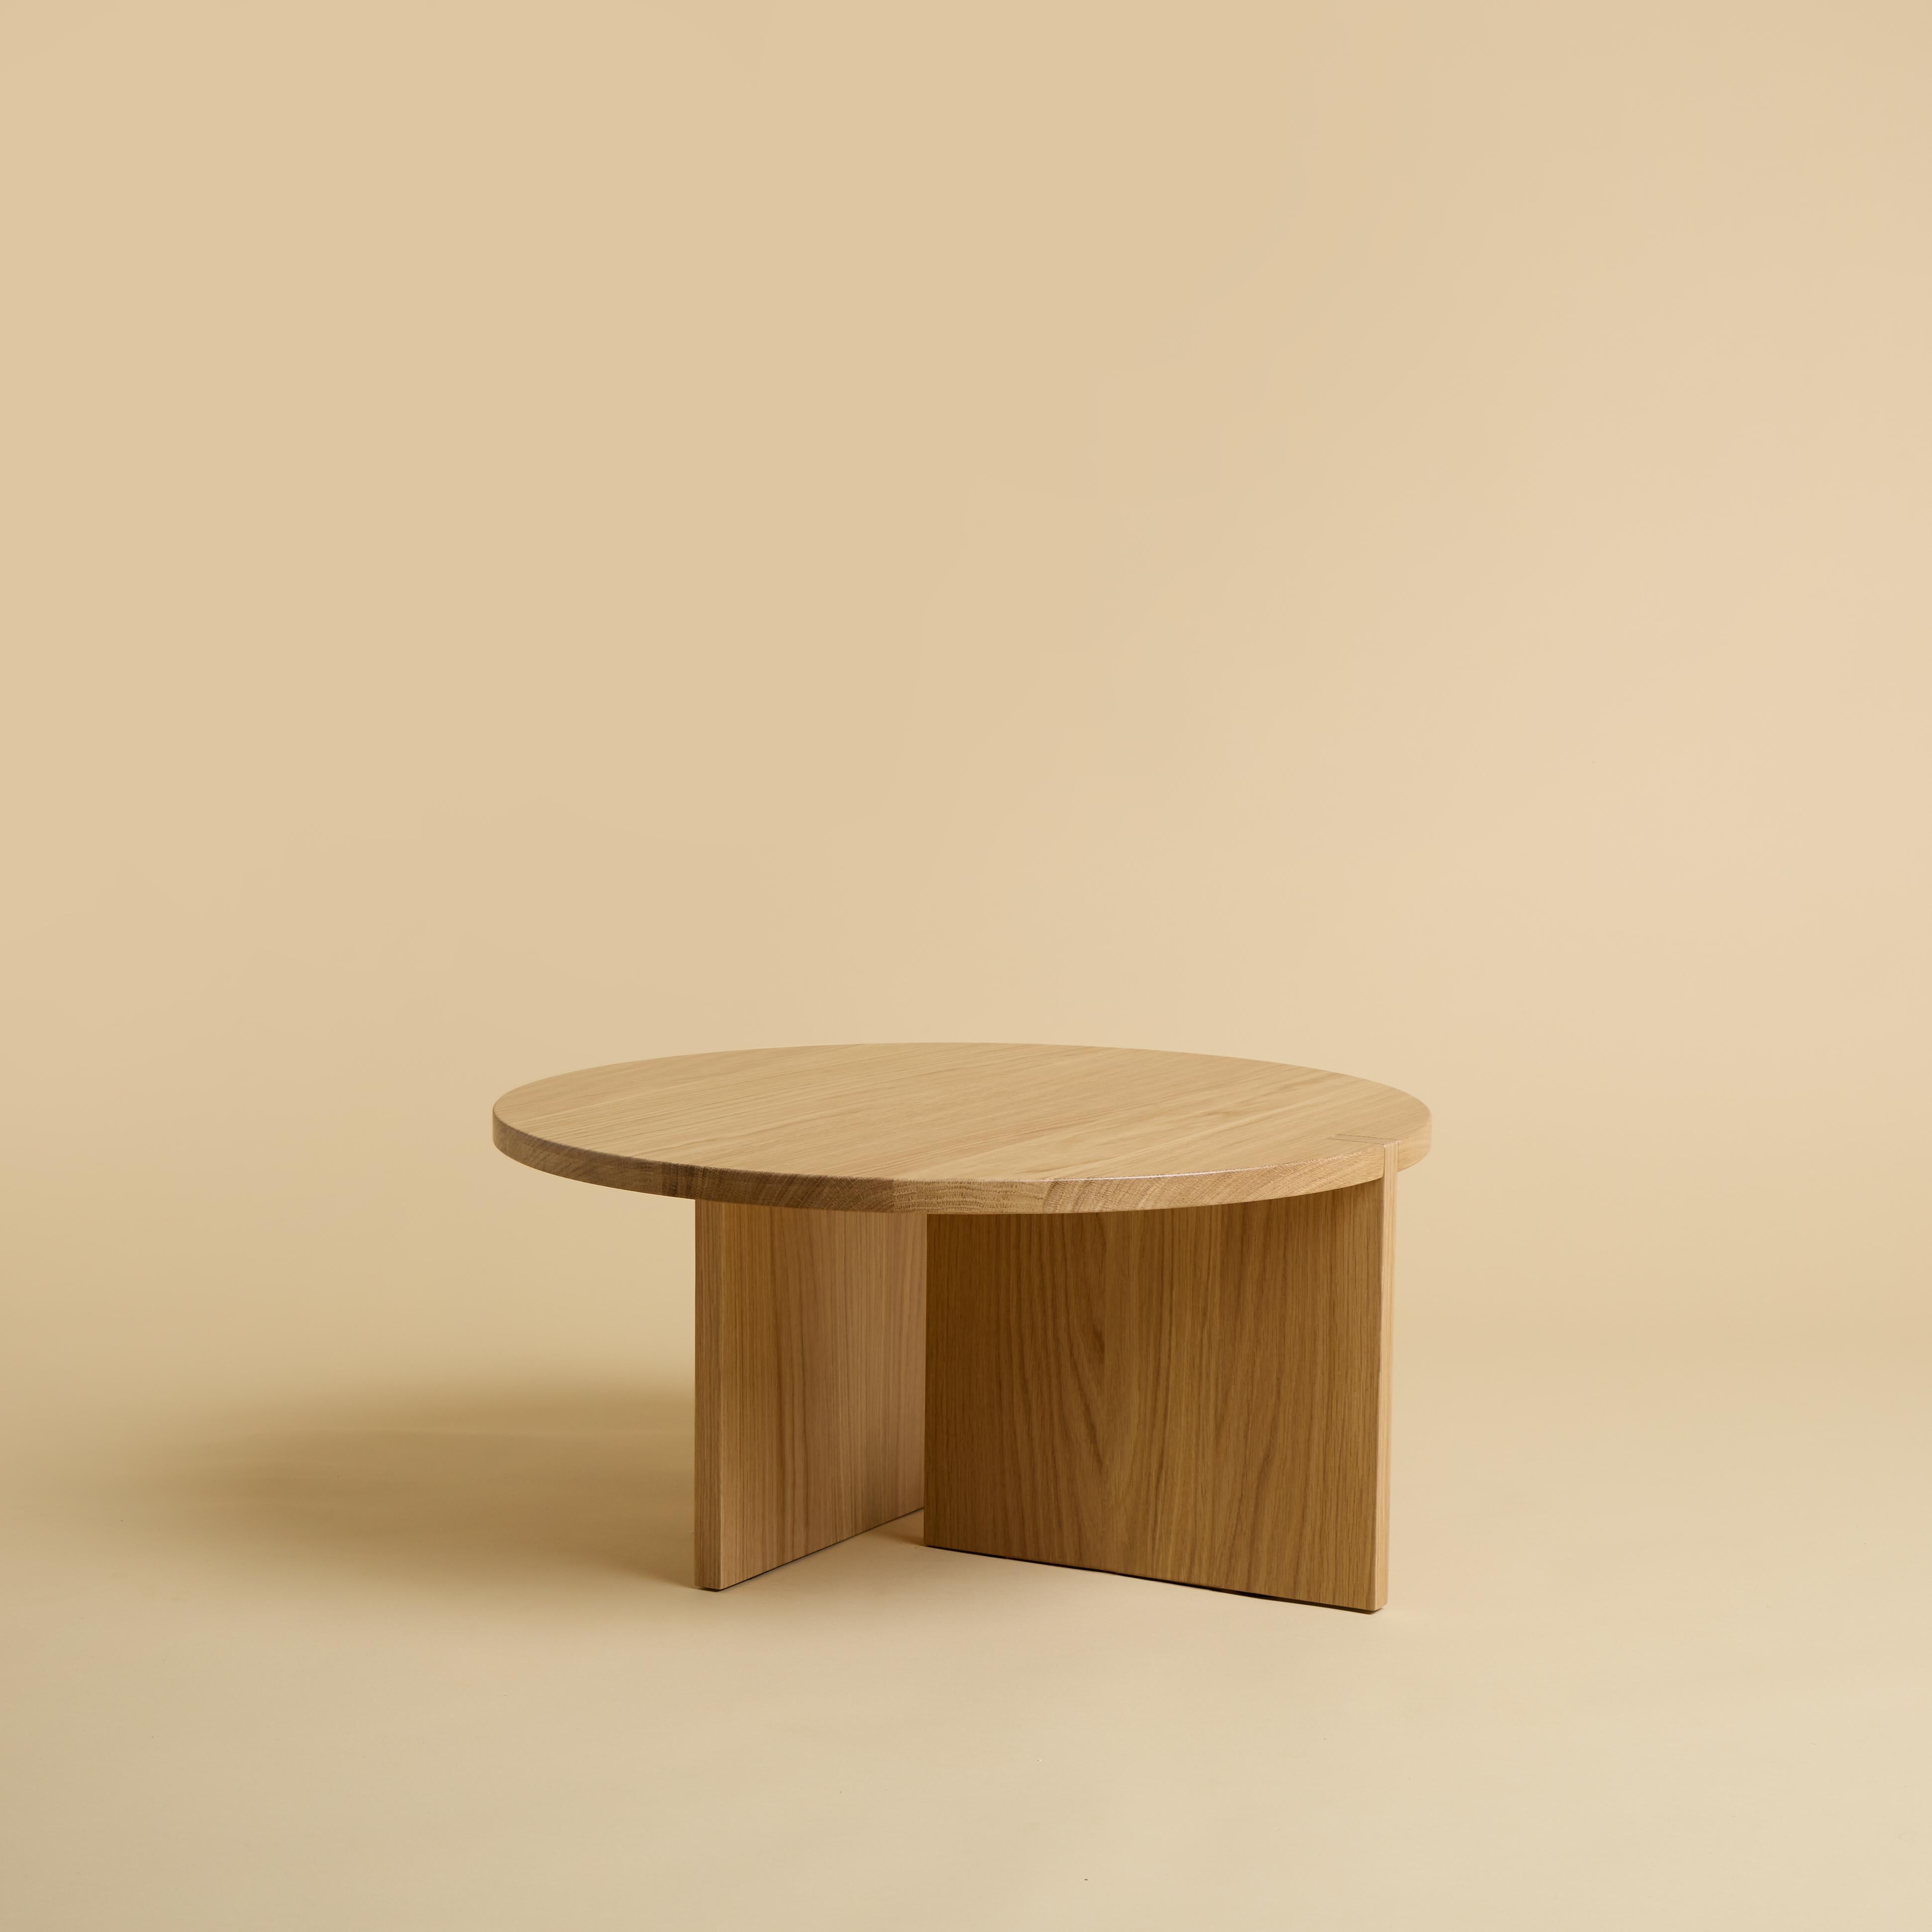 Der Couchtisch Minami ist komplett aus massivem Eichenholz gefertigt. Die Platte ist rund und hat einen Durchmesser von 60 cm, die Beine sind aus zwei verleimten Massivholzbrettern gefertigt, von denen ein Teil in die Platte eingelegt ist.
Das Stück